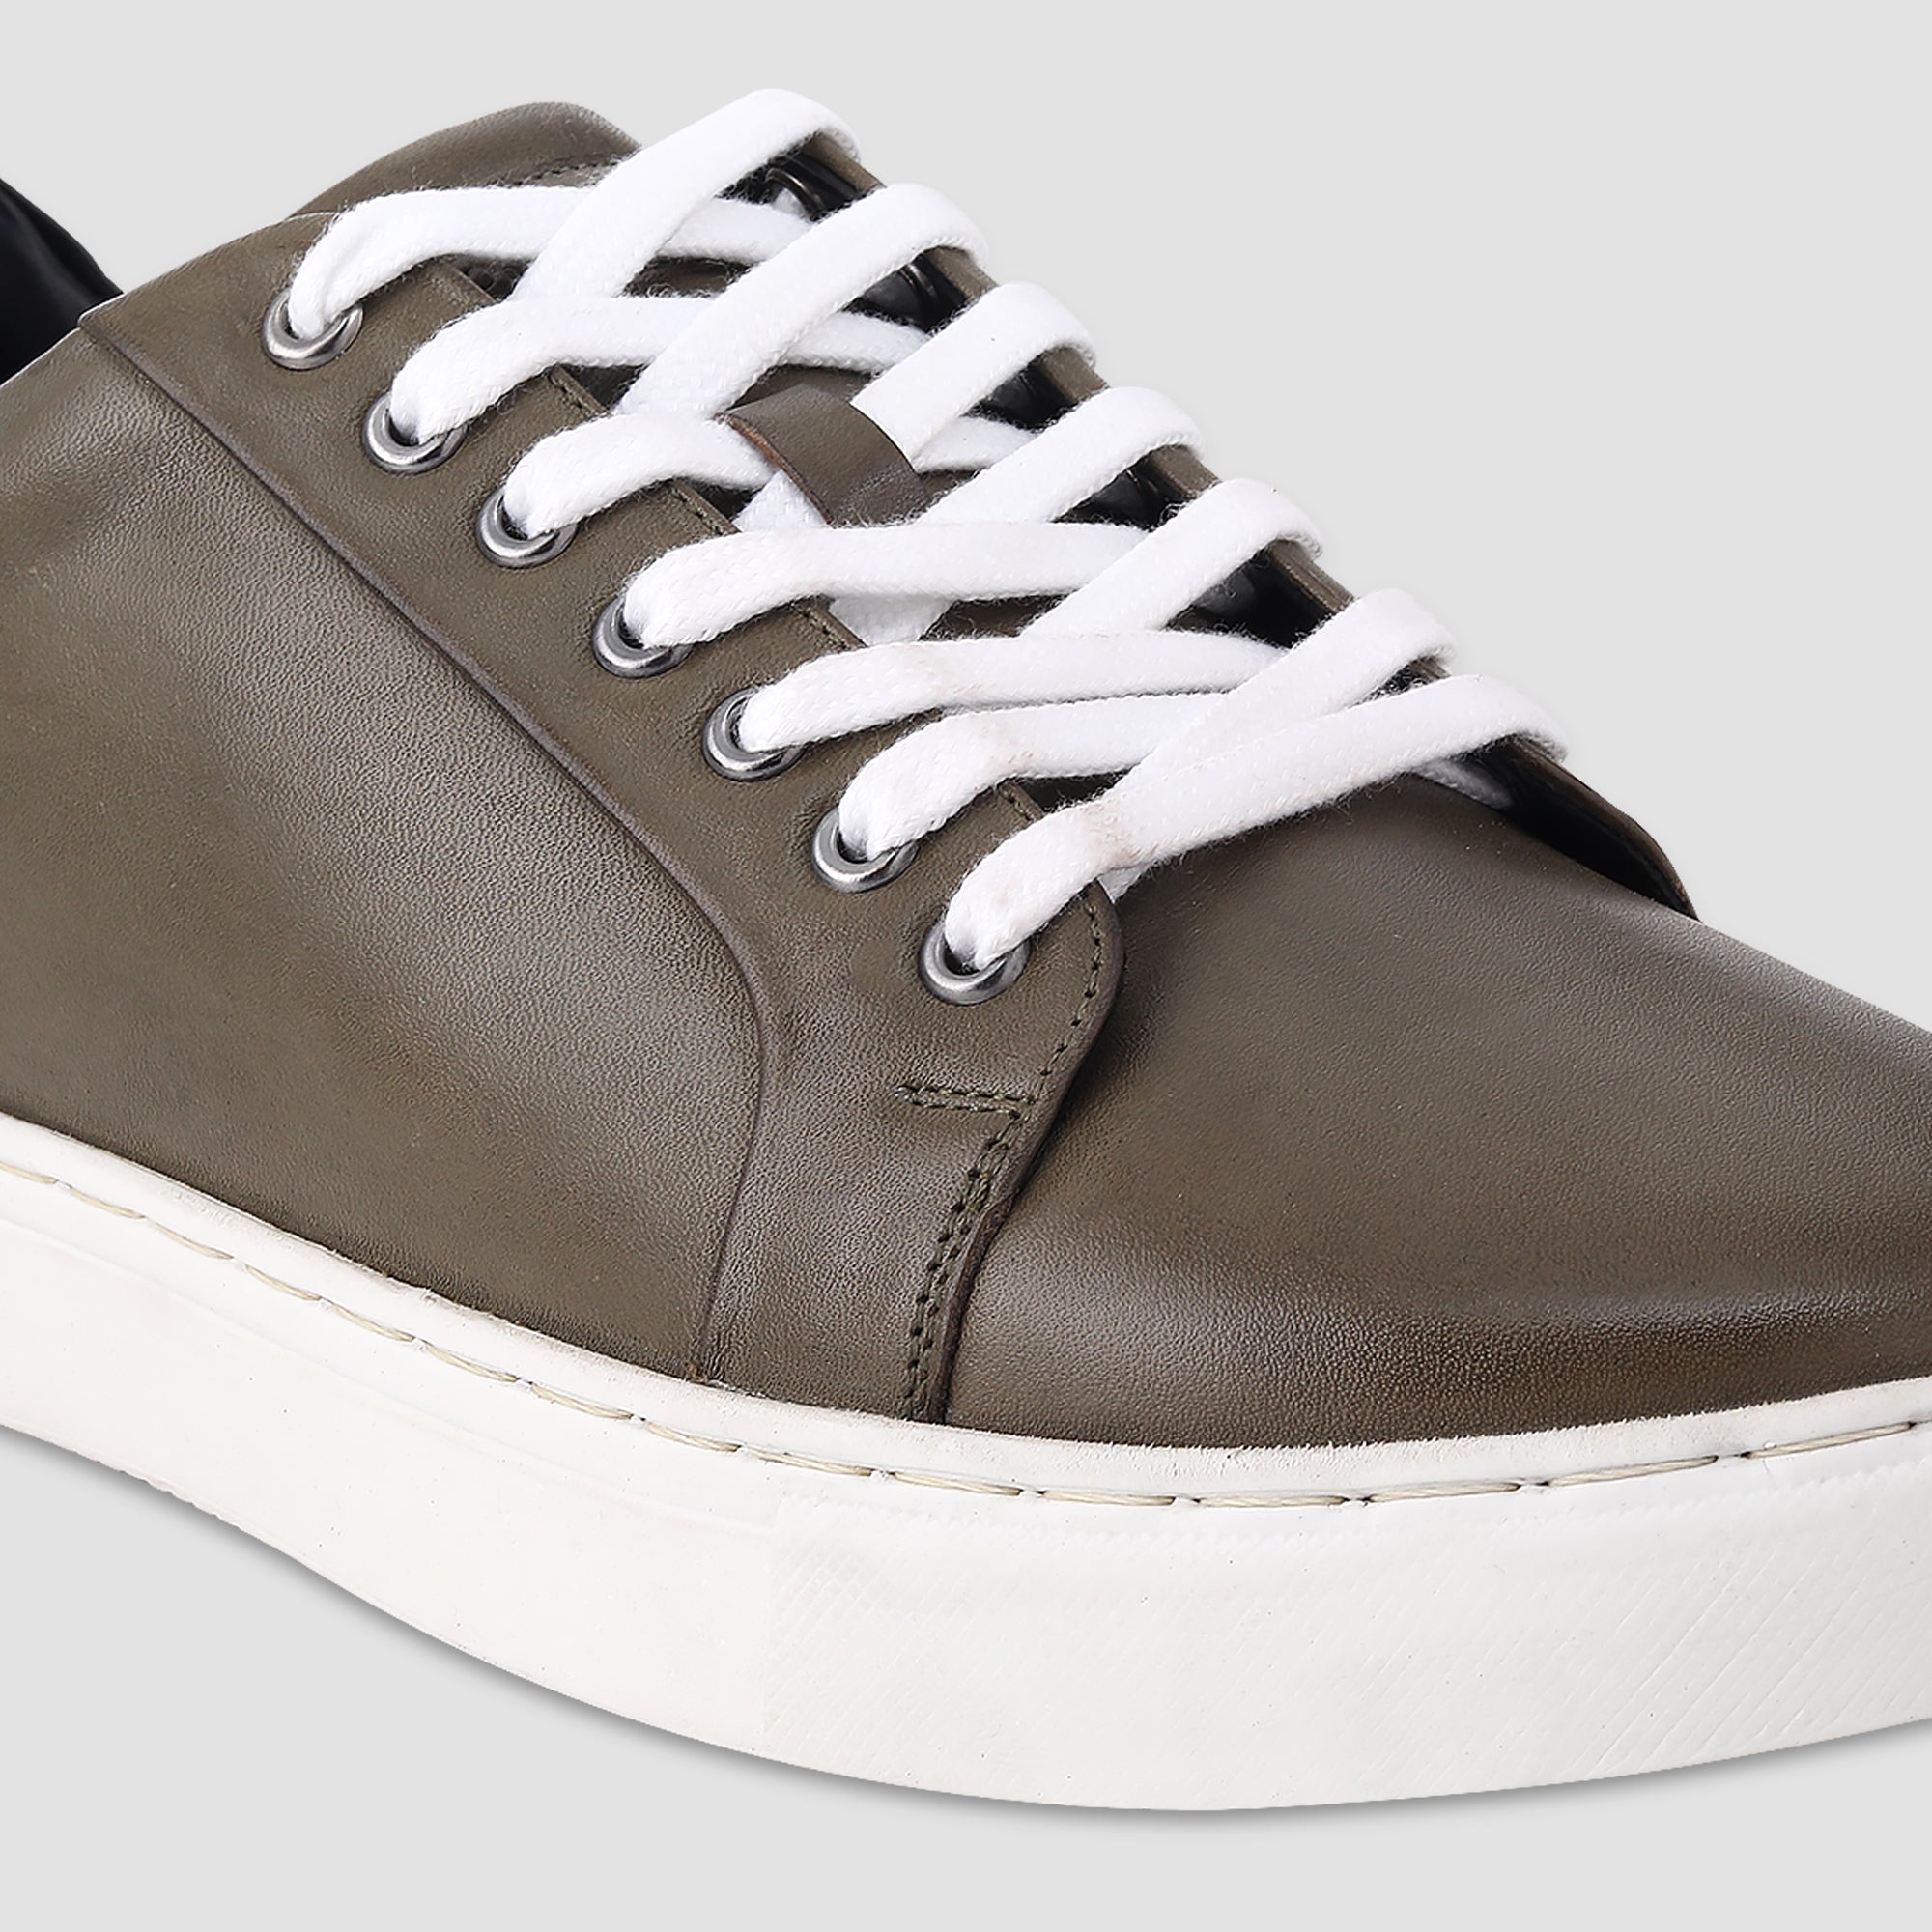 Ezok Olive Leather Sneaker For Men